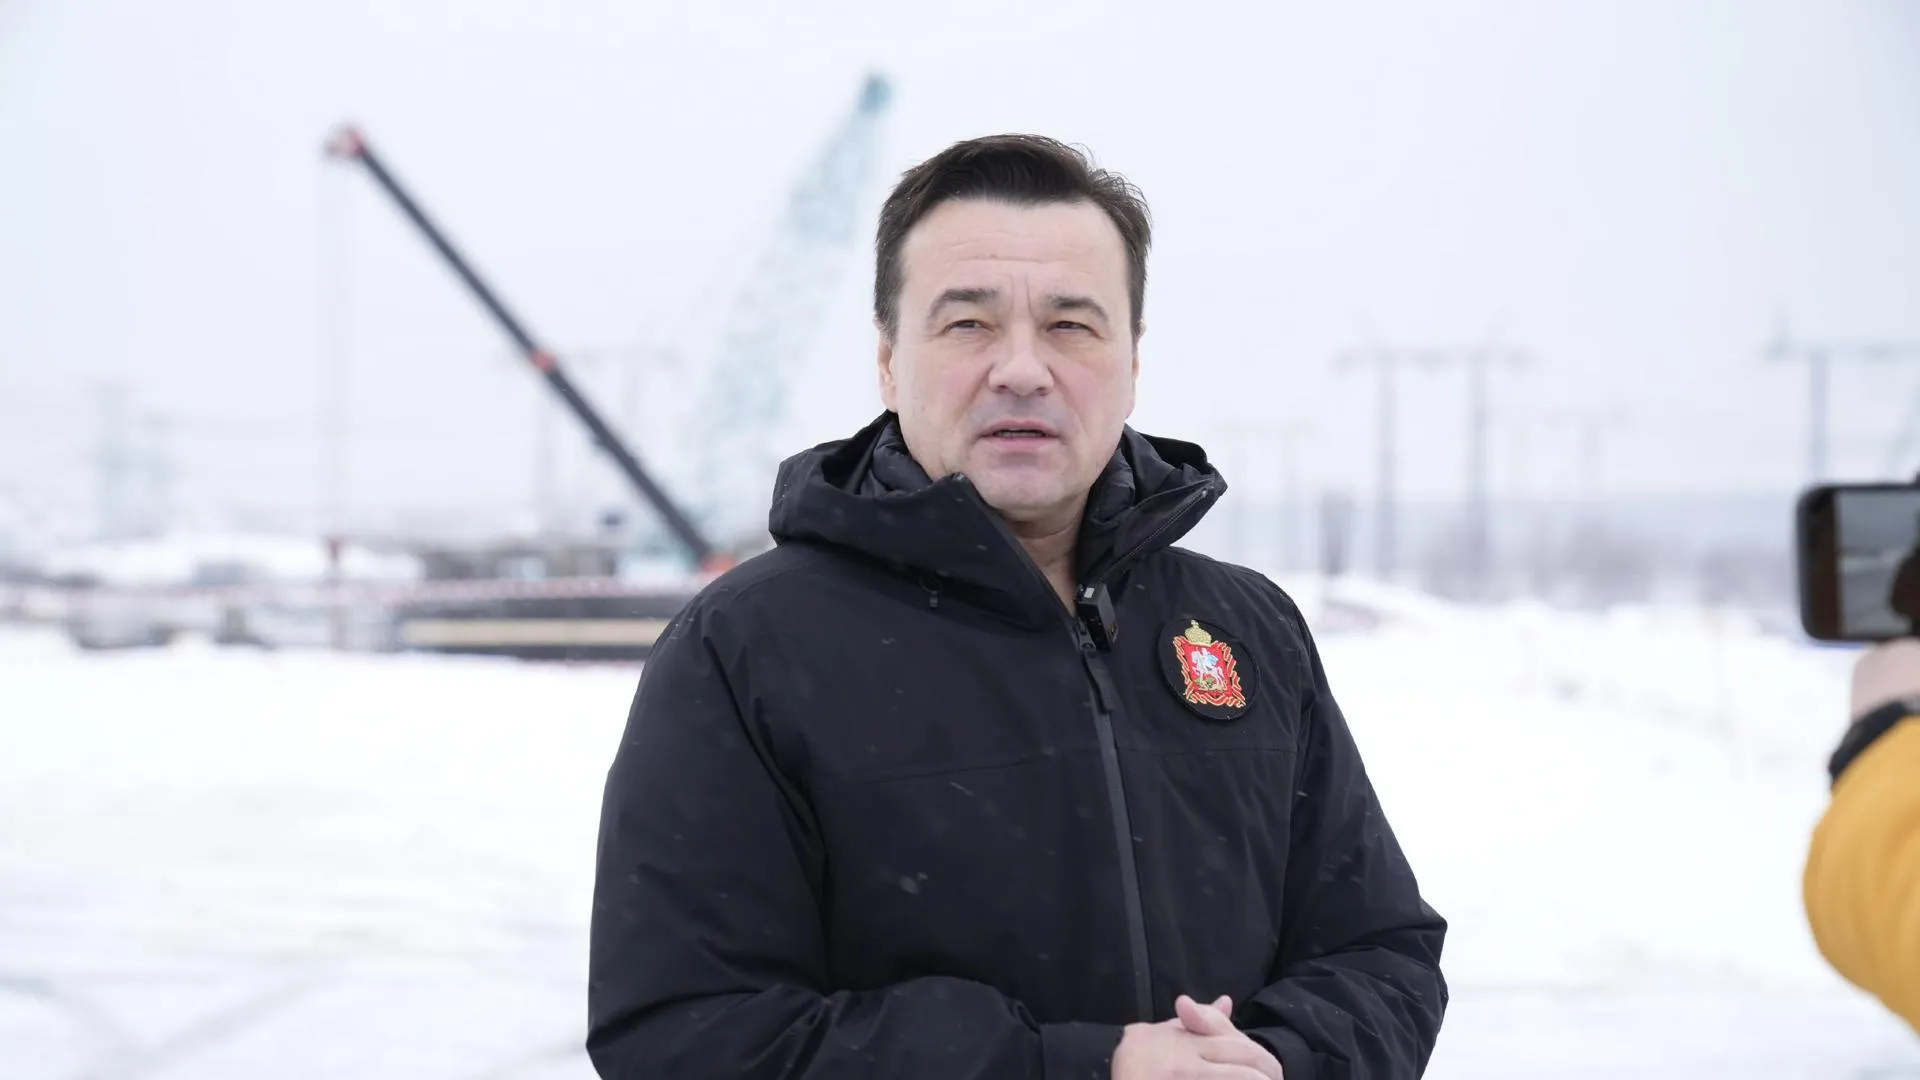 Андрей Воробьев: 18 тыс дворников и 1,5 тыс машин убирают снег в Подмосковье